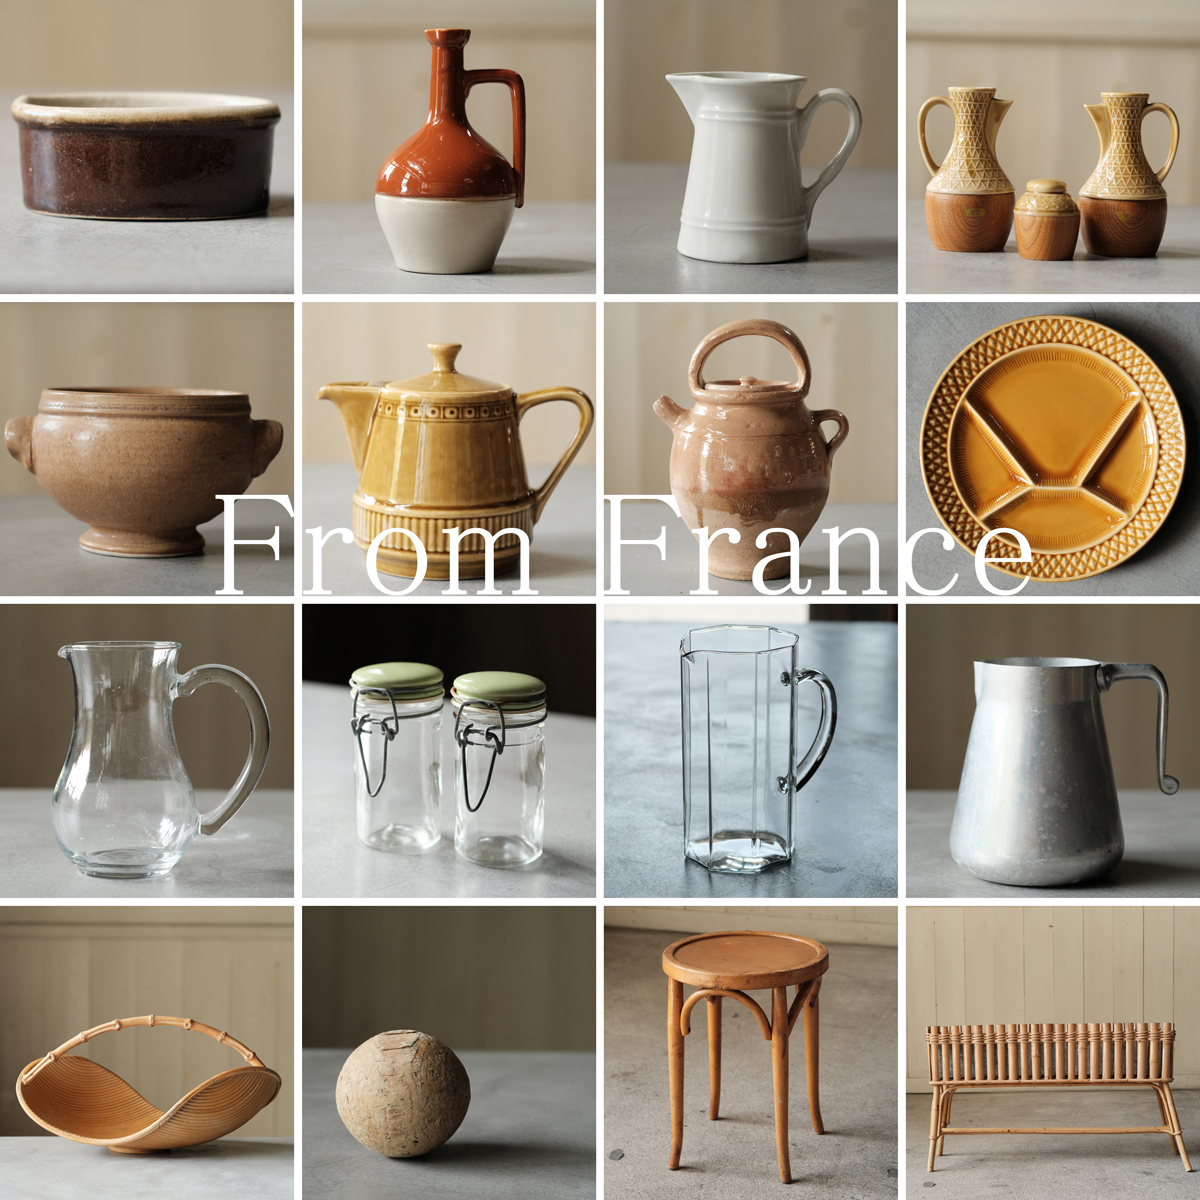 フランスアンティークの陶器やガラス、小家具などをオンラインショップにアップしました